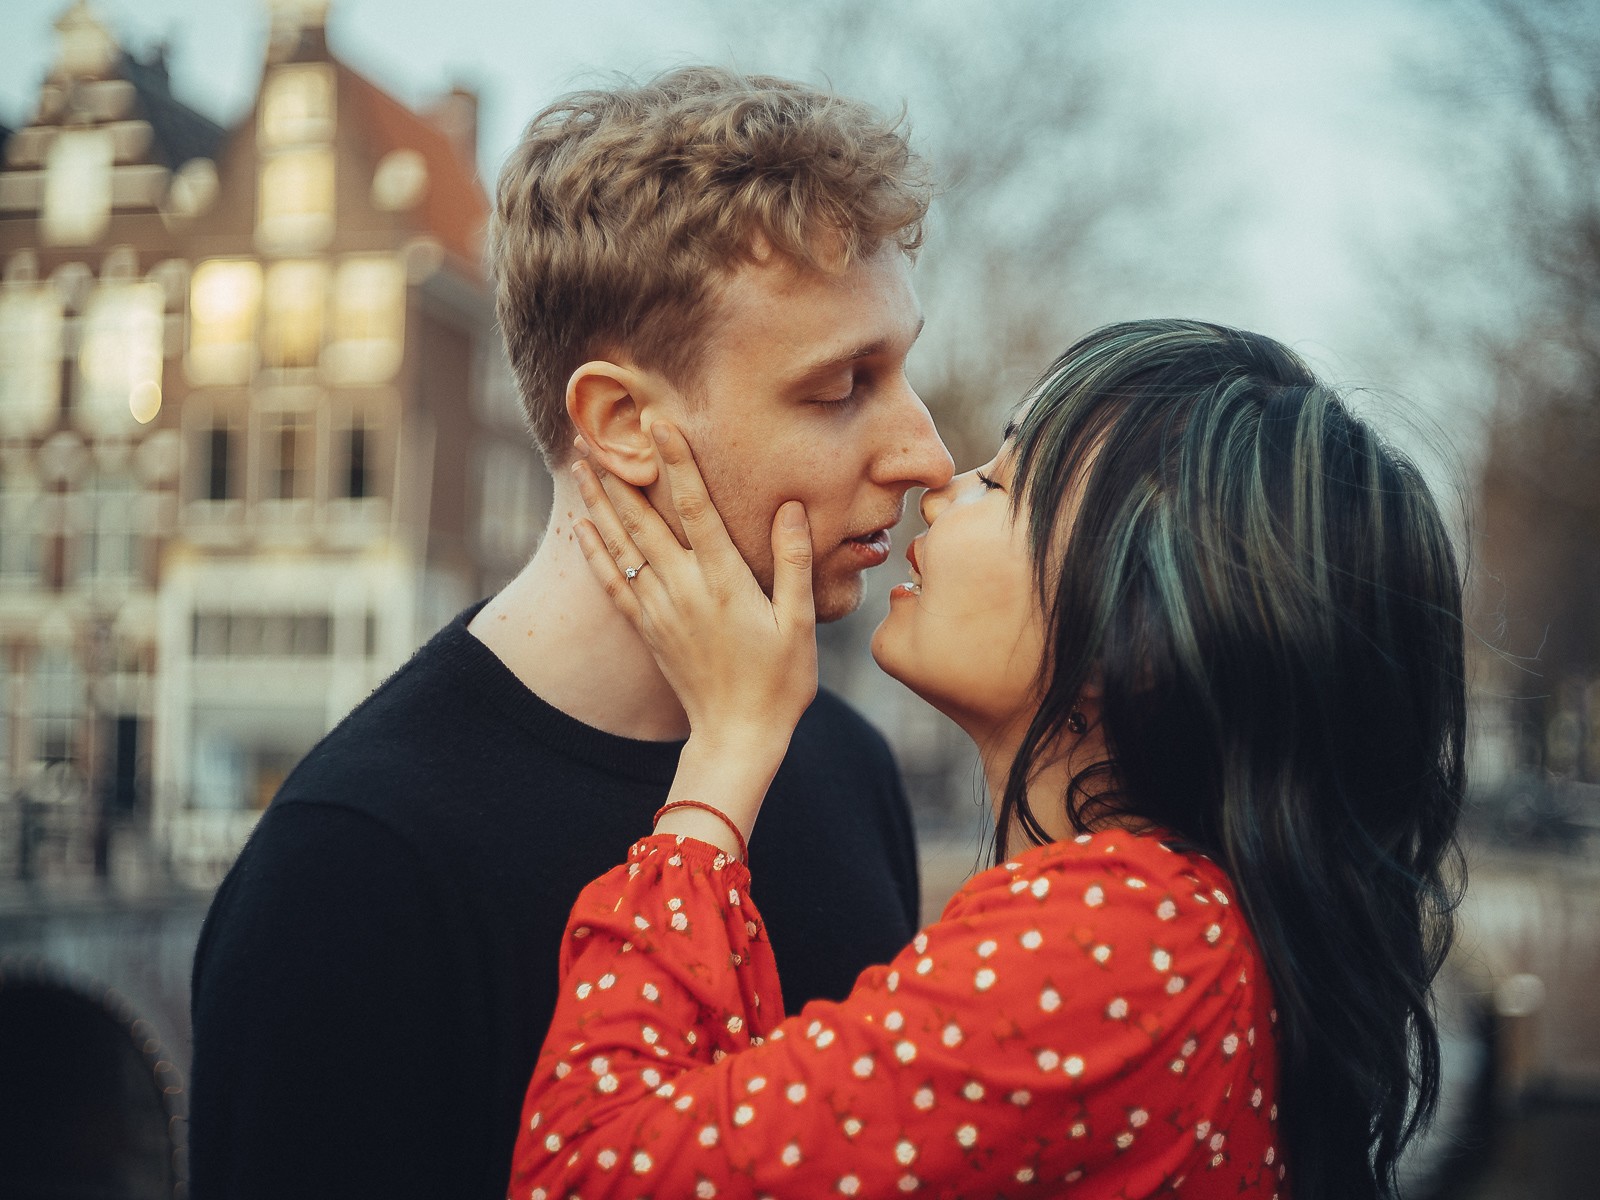 Couple Honeymoon Photoshoot In Amsterdam Rudenko Photography